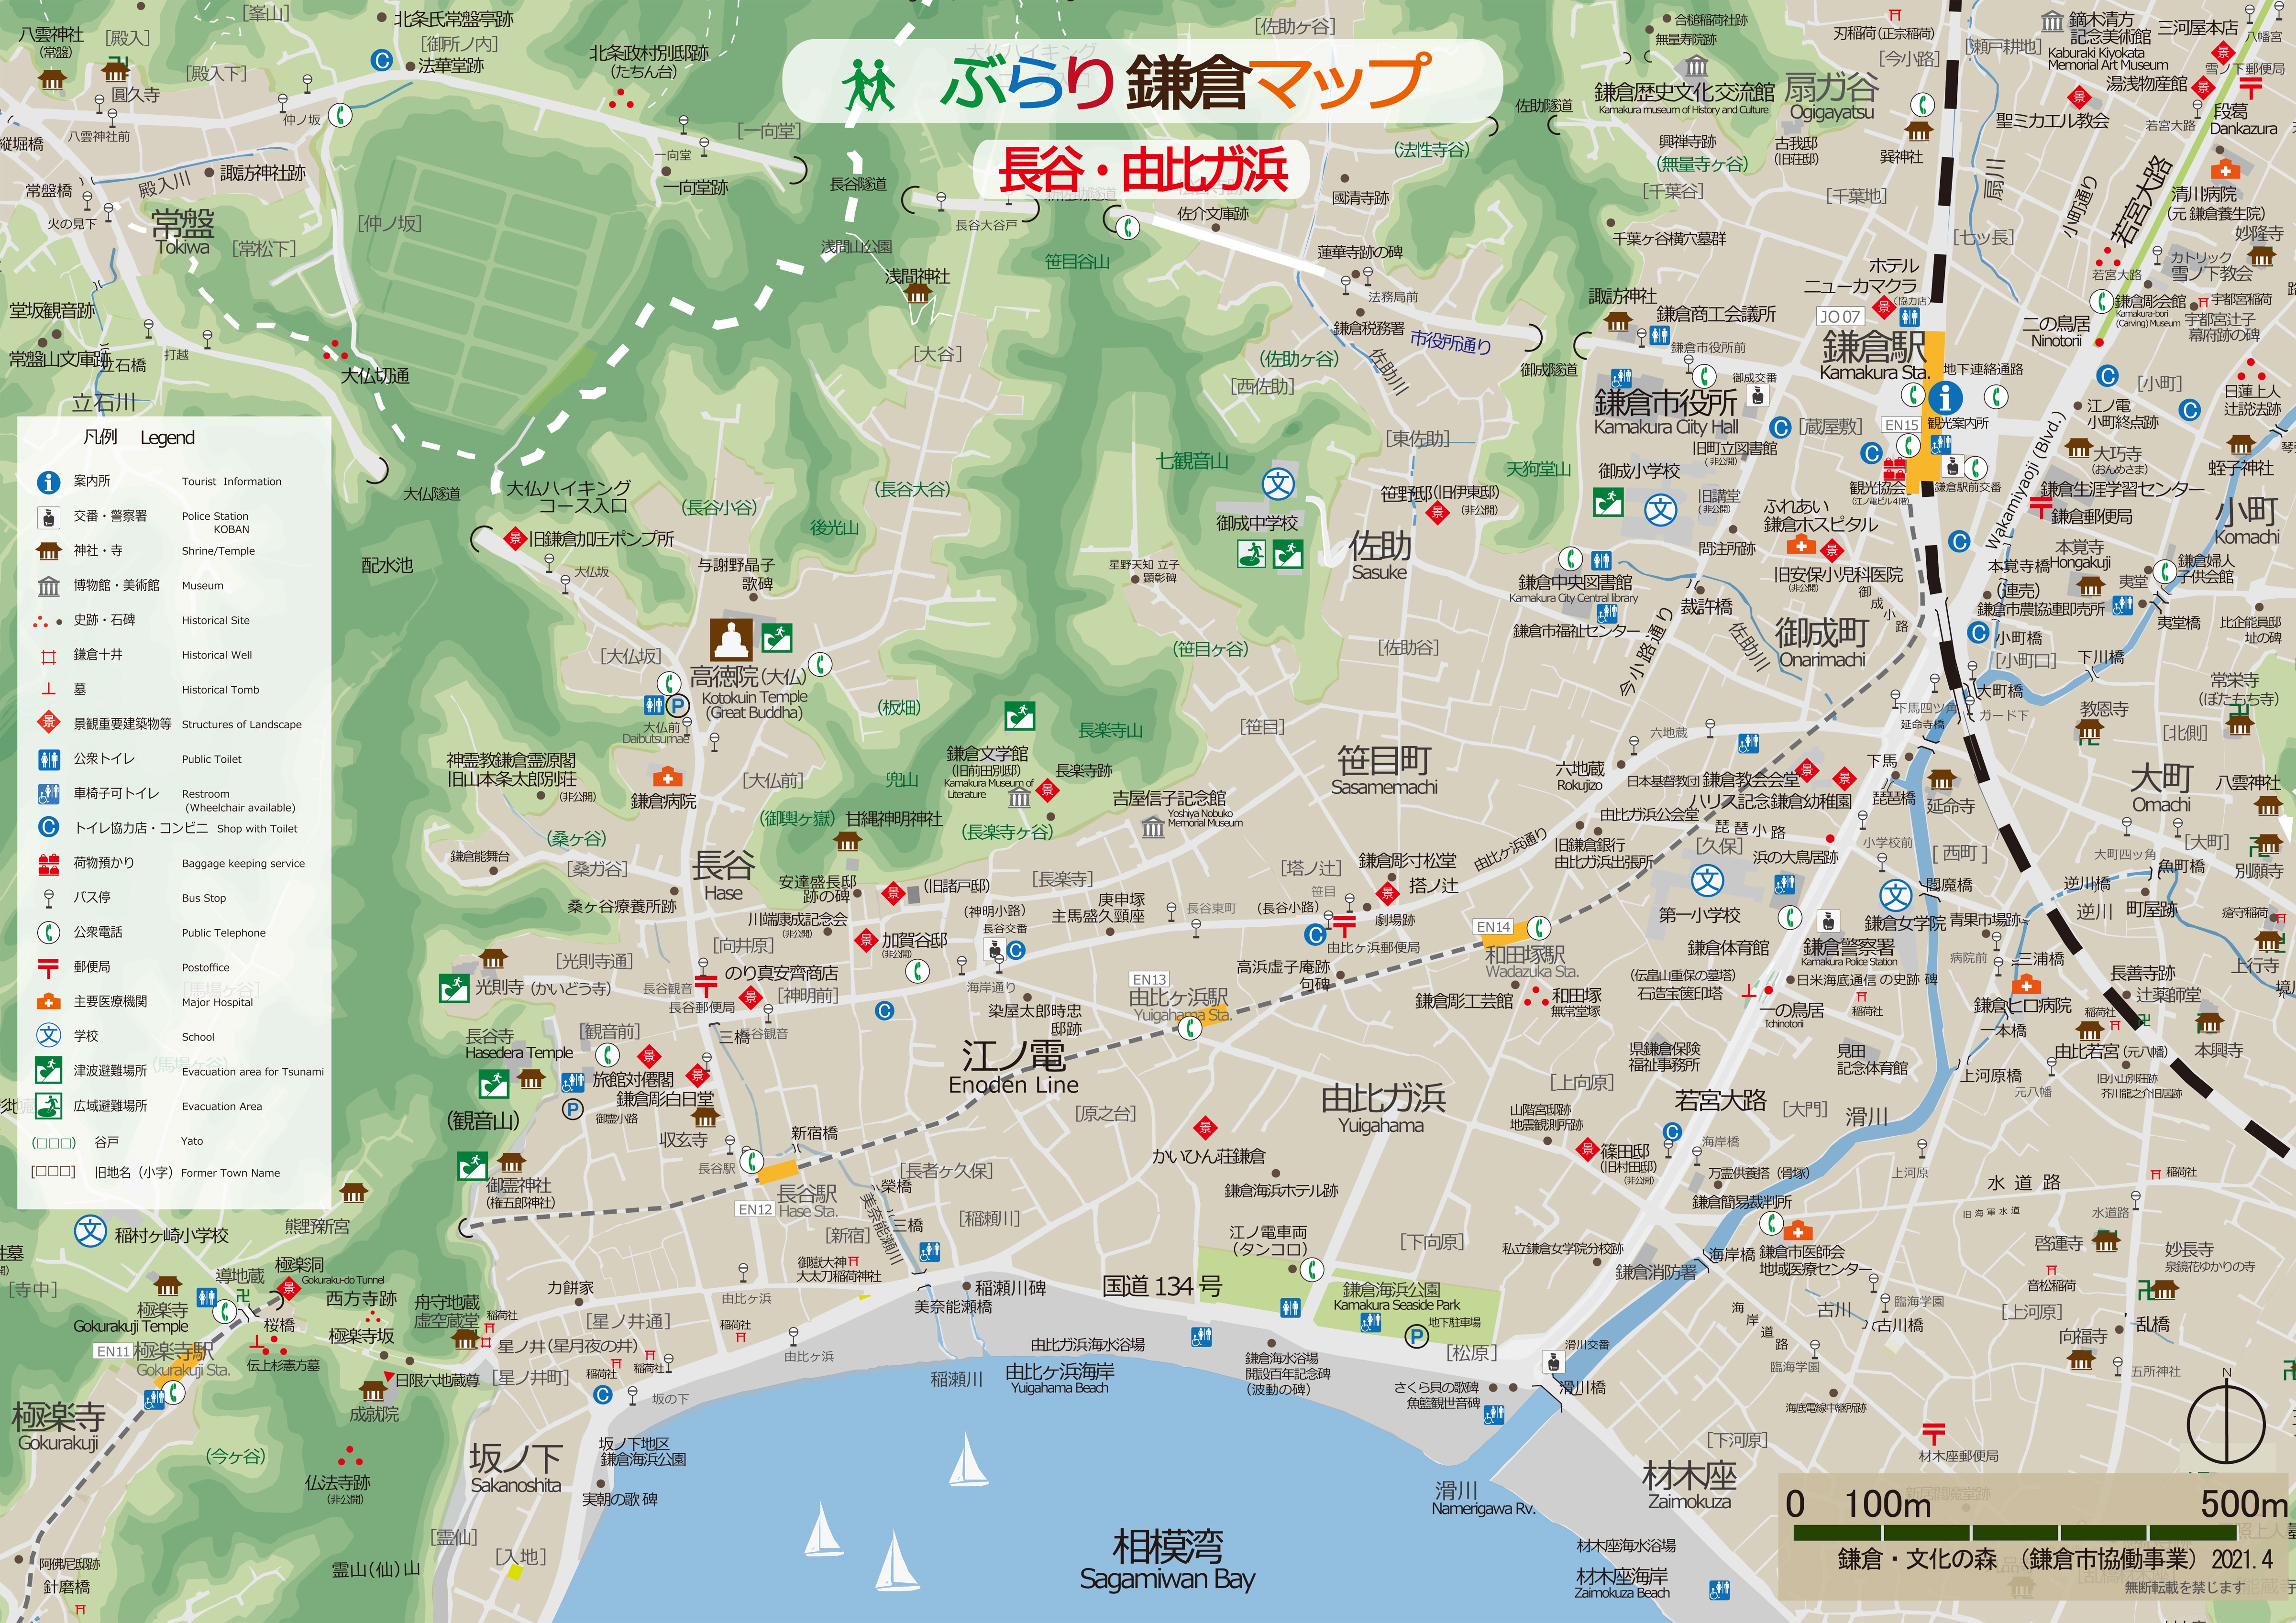 鎌倉観光のおともに。観光パンフレット＆資料をどうぞ